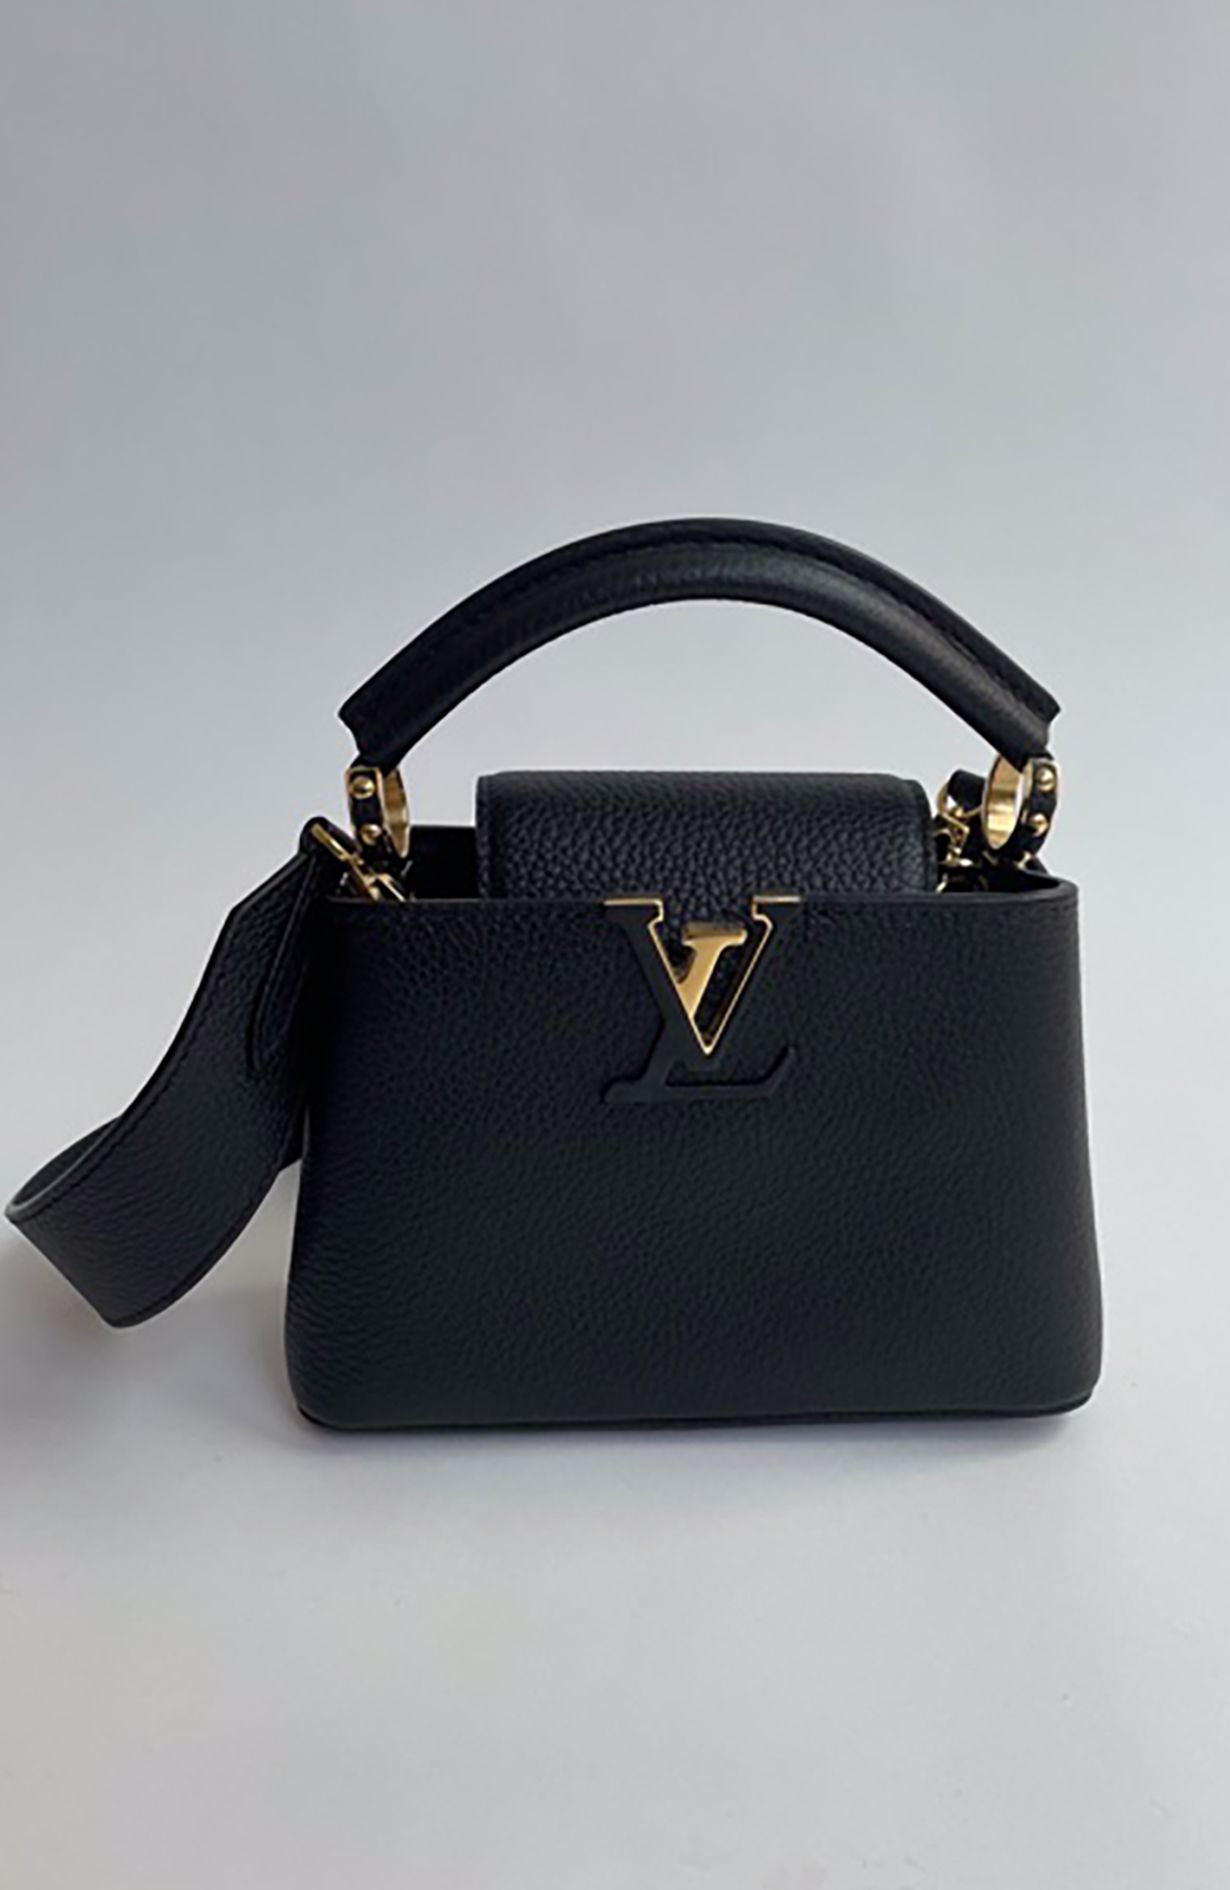 Louis Vuitton® Capucines Mini Black. Size